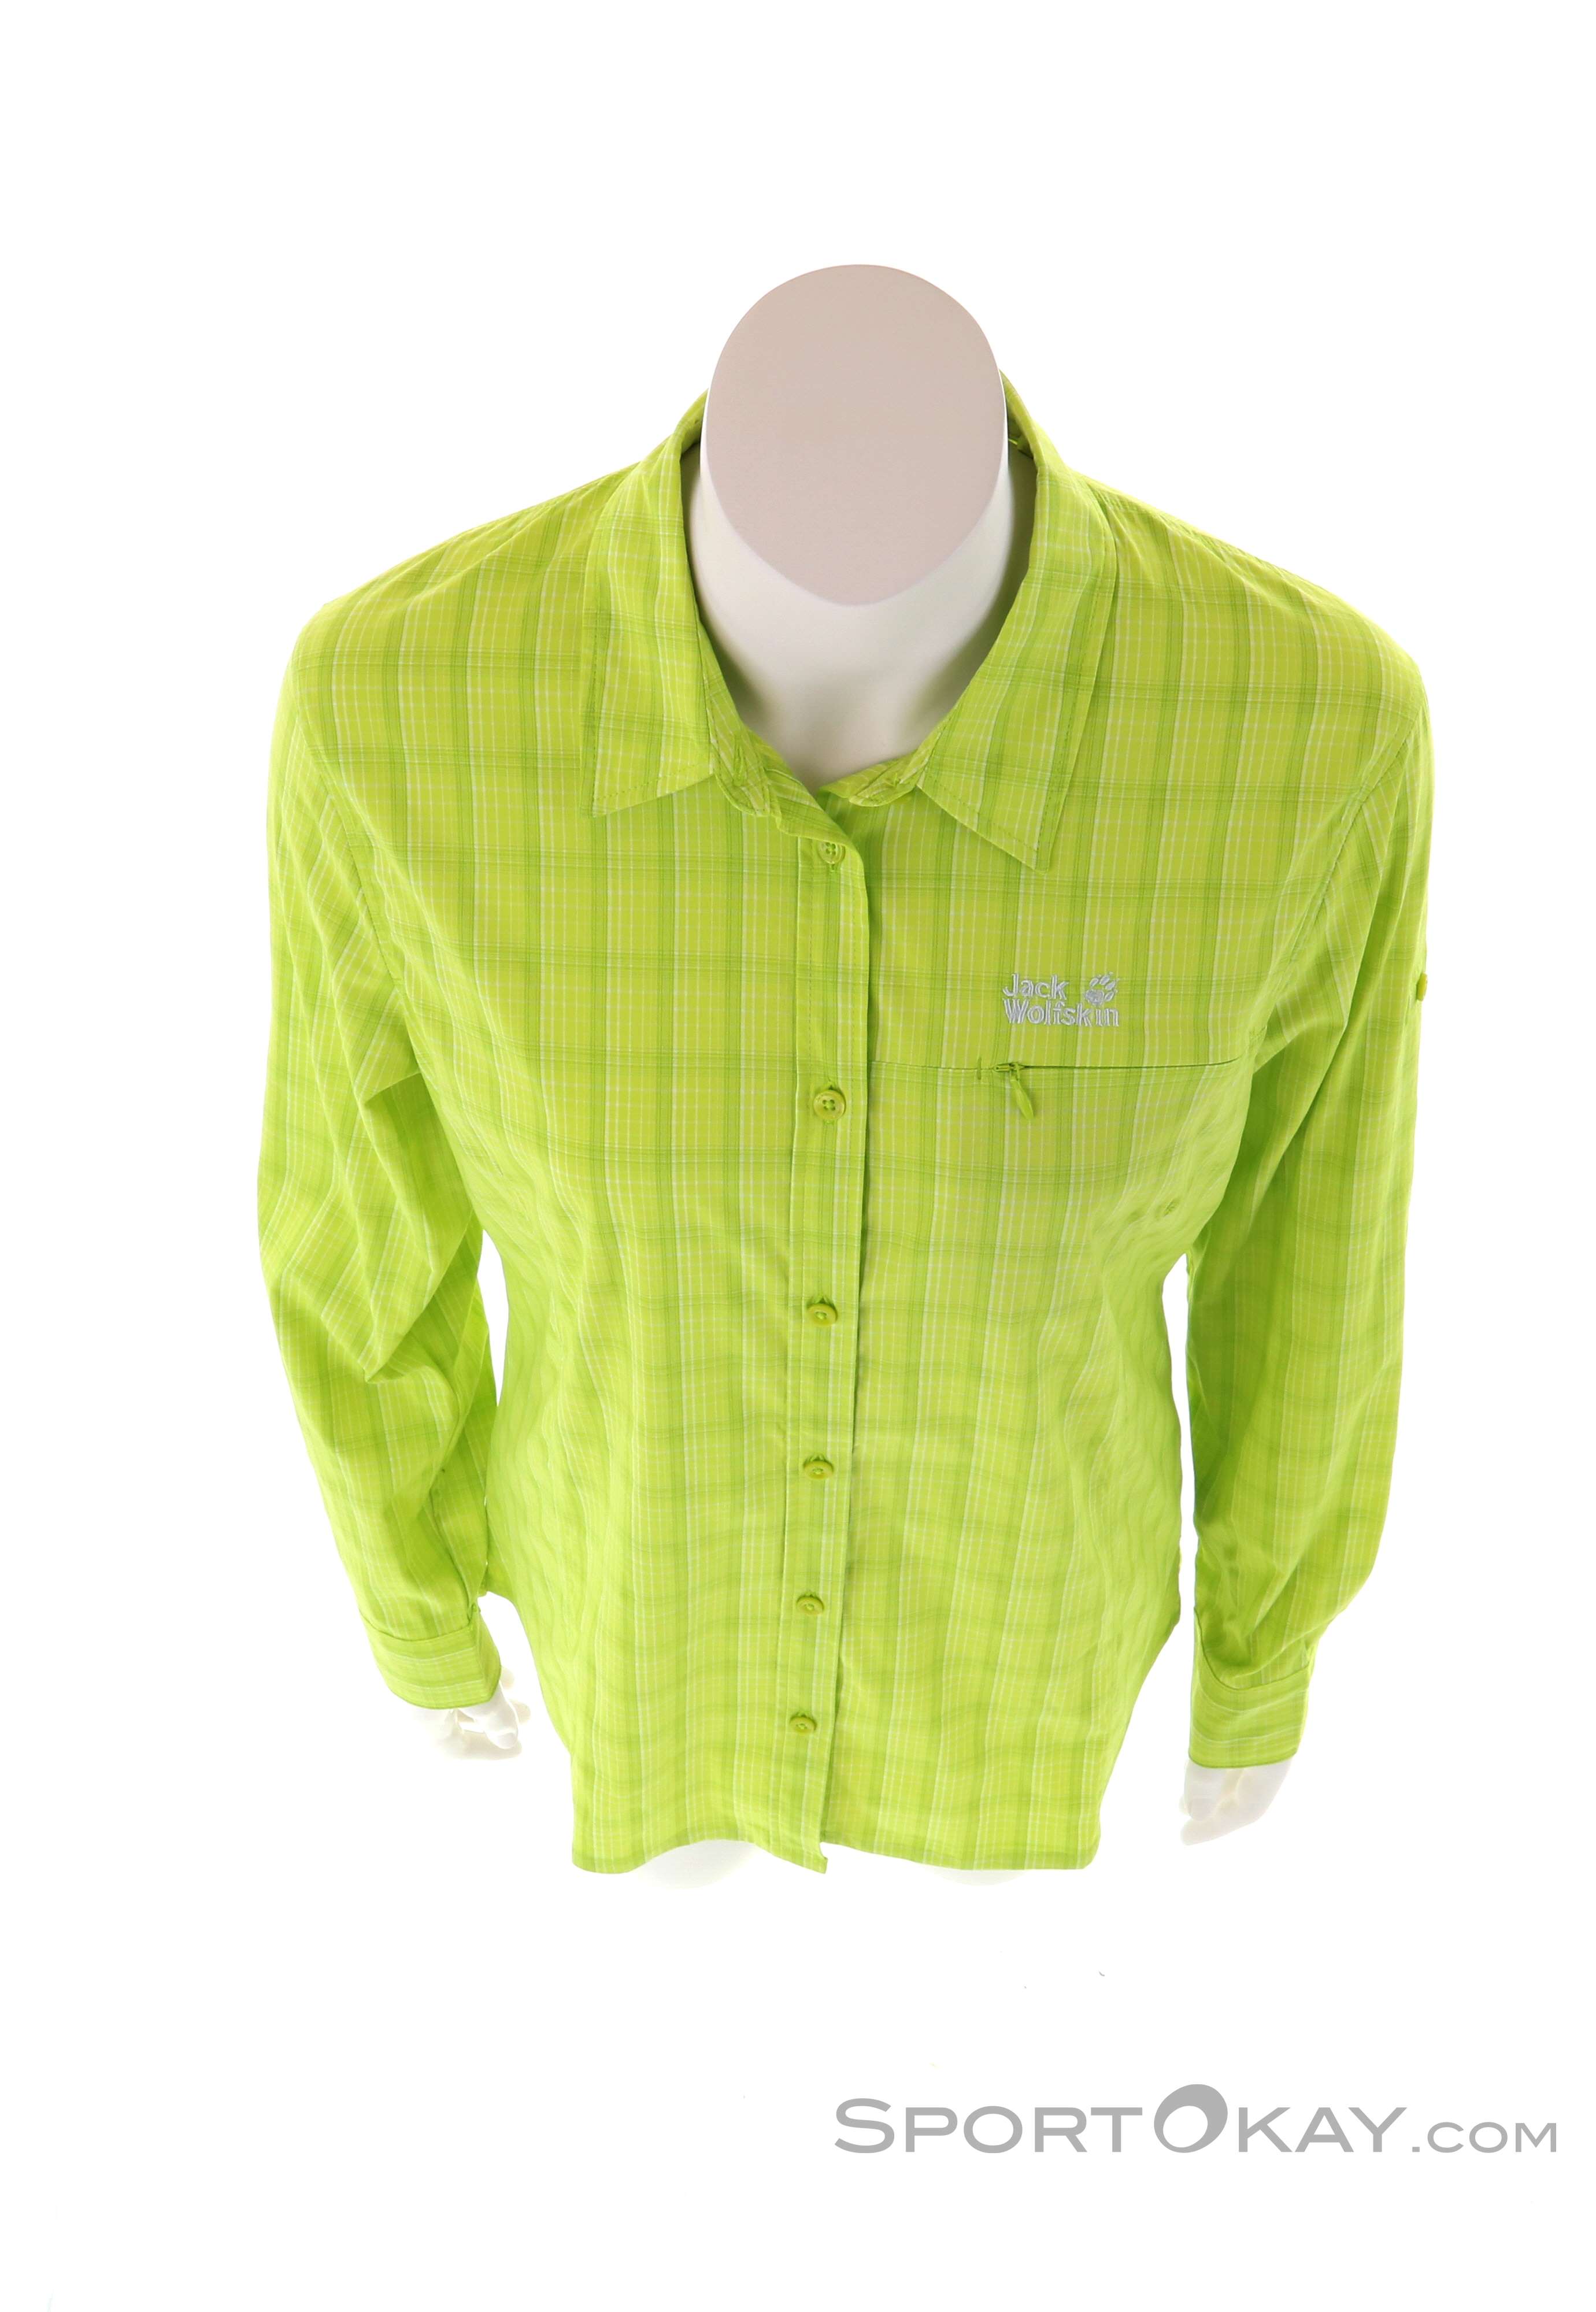 & Centaura - Outdoor Outdoorbekleidung - Bluse Damen Flex Wolfskin - Alle Hemden Jack Shirts -